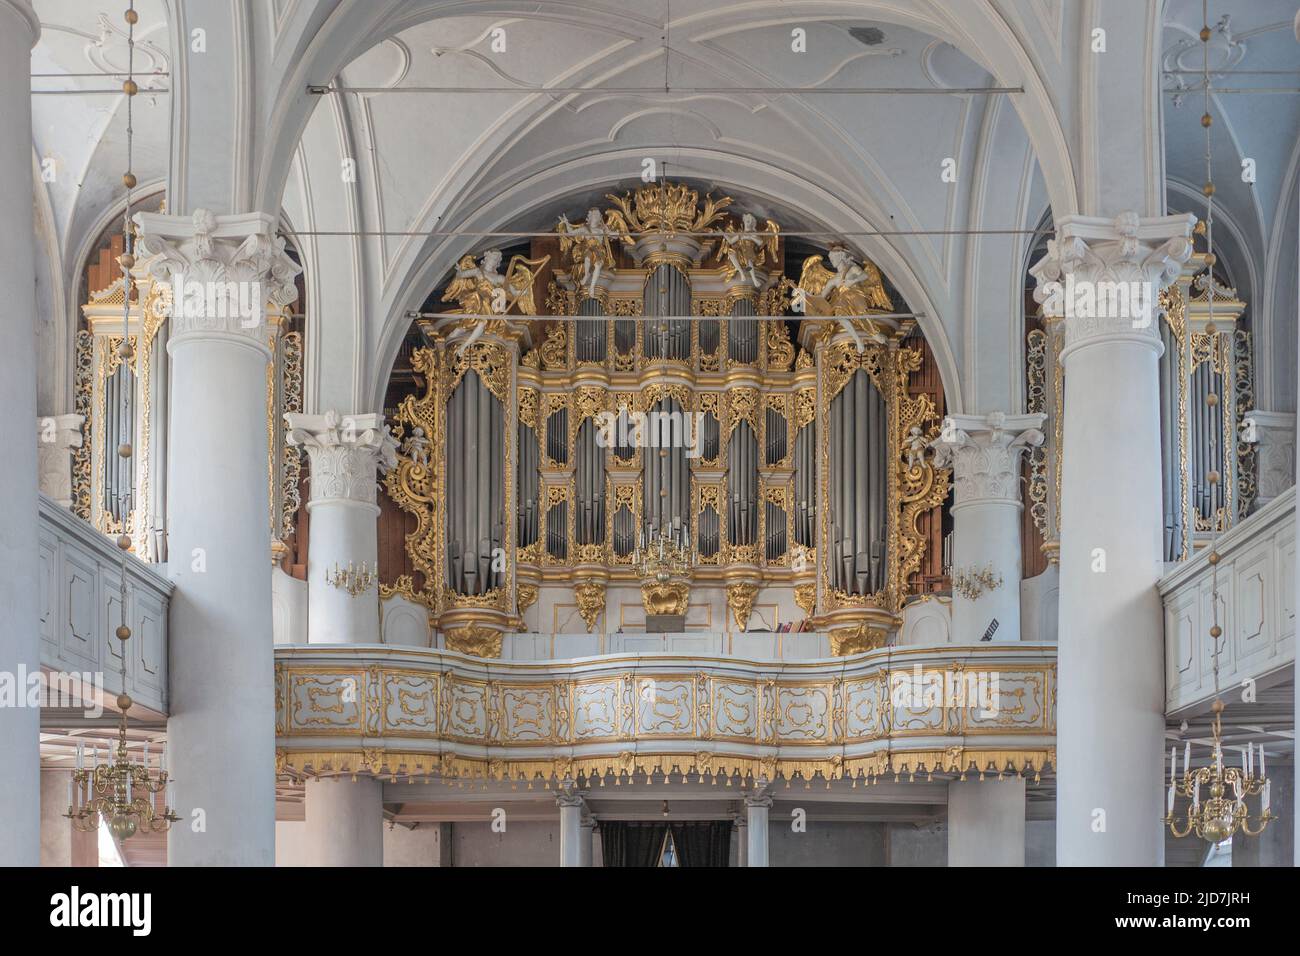 Orgel der Dreifaltigkeitskirche Liepaja, Liepājas Svētās Trīsvienības baznīcas ērģeles größte mechanische Orgel der Welt Stock Photo